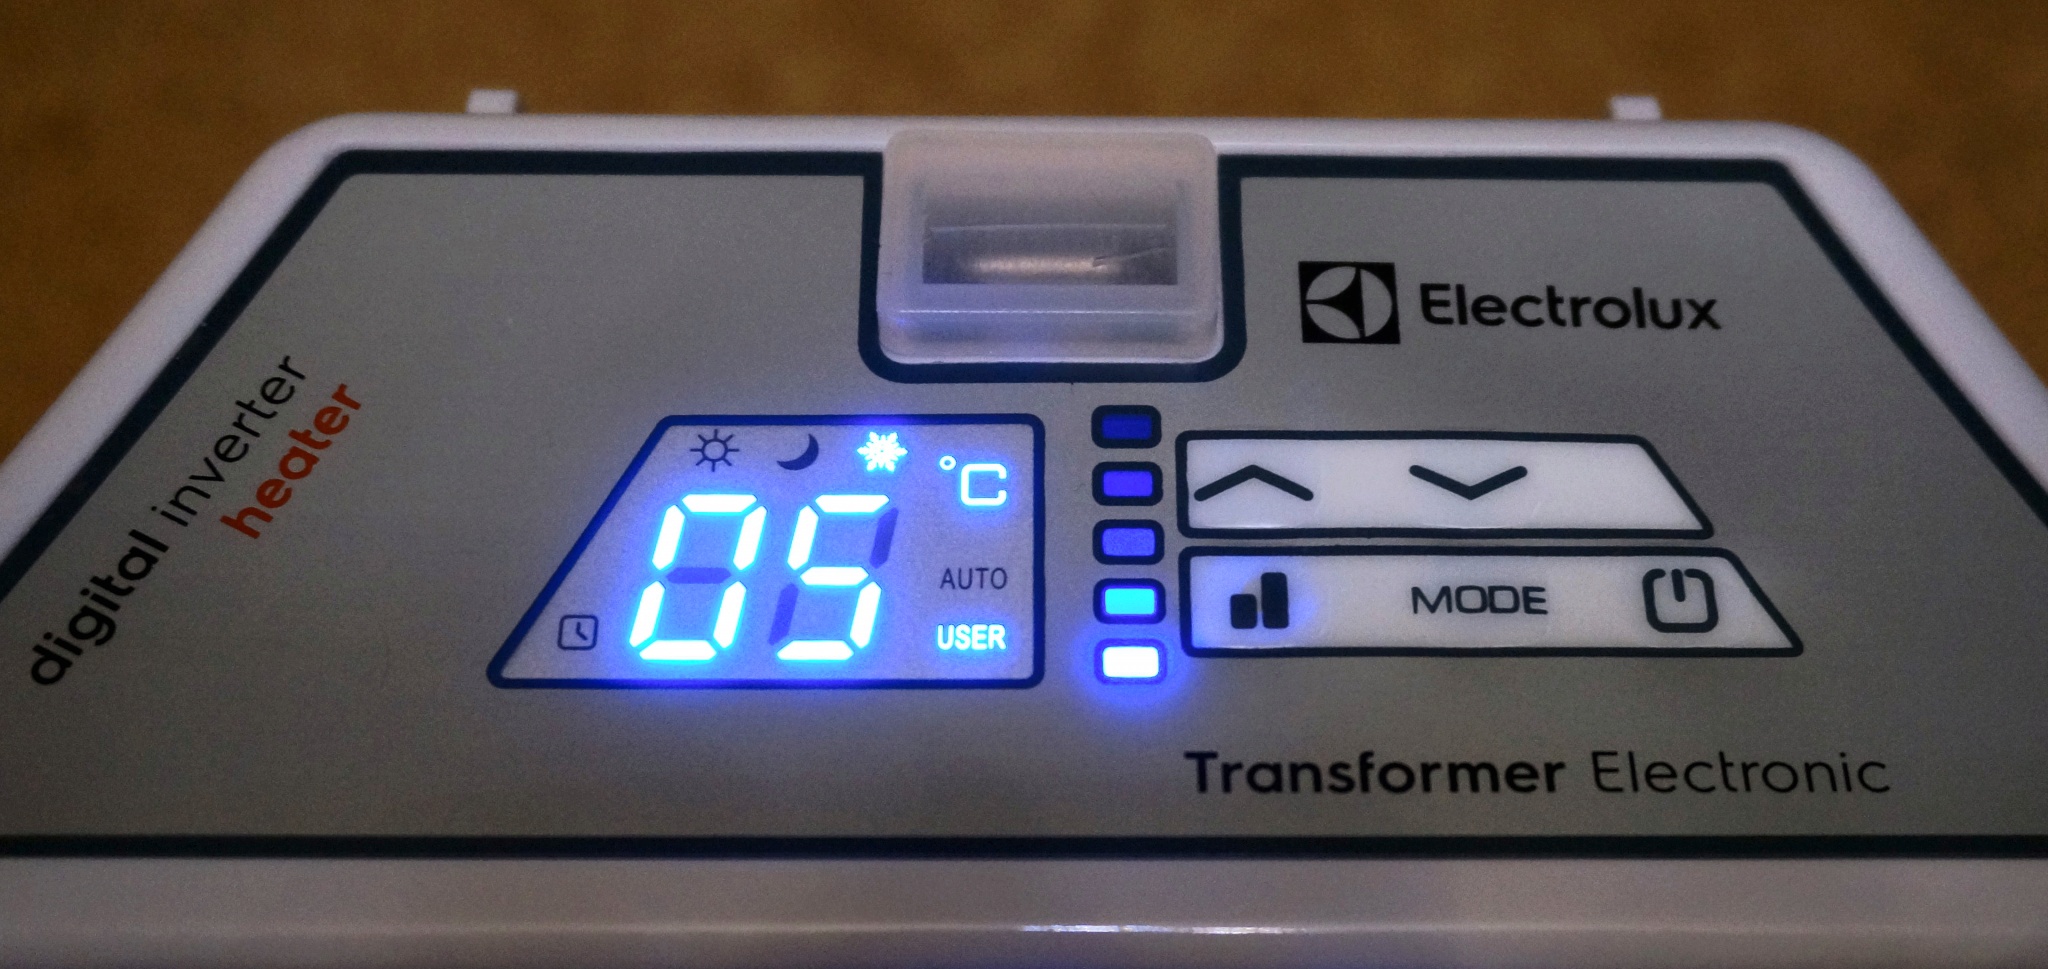 Блок управления конвектора Electrolux Transformer Digital Inverter 3.0. Transformer Digital Inverter ECH/tui3 Electrolux НС-1199056. Electrolux ech tui4 transformer